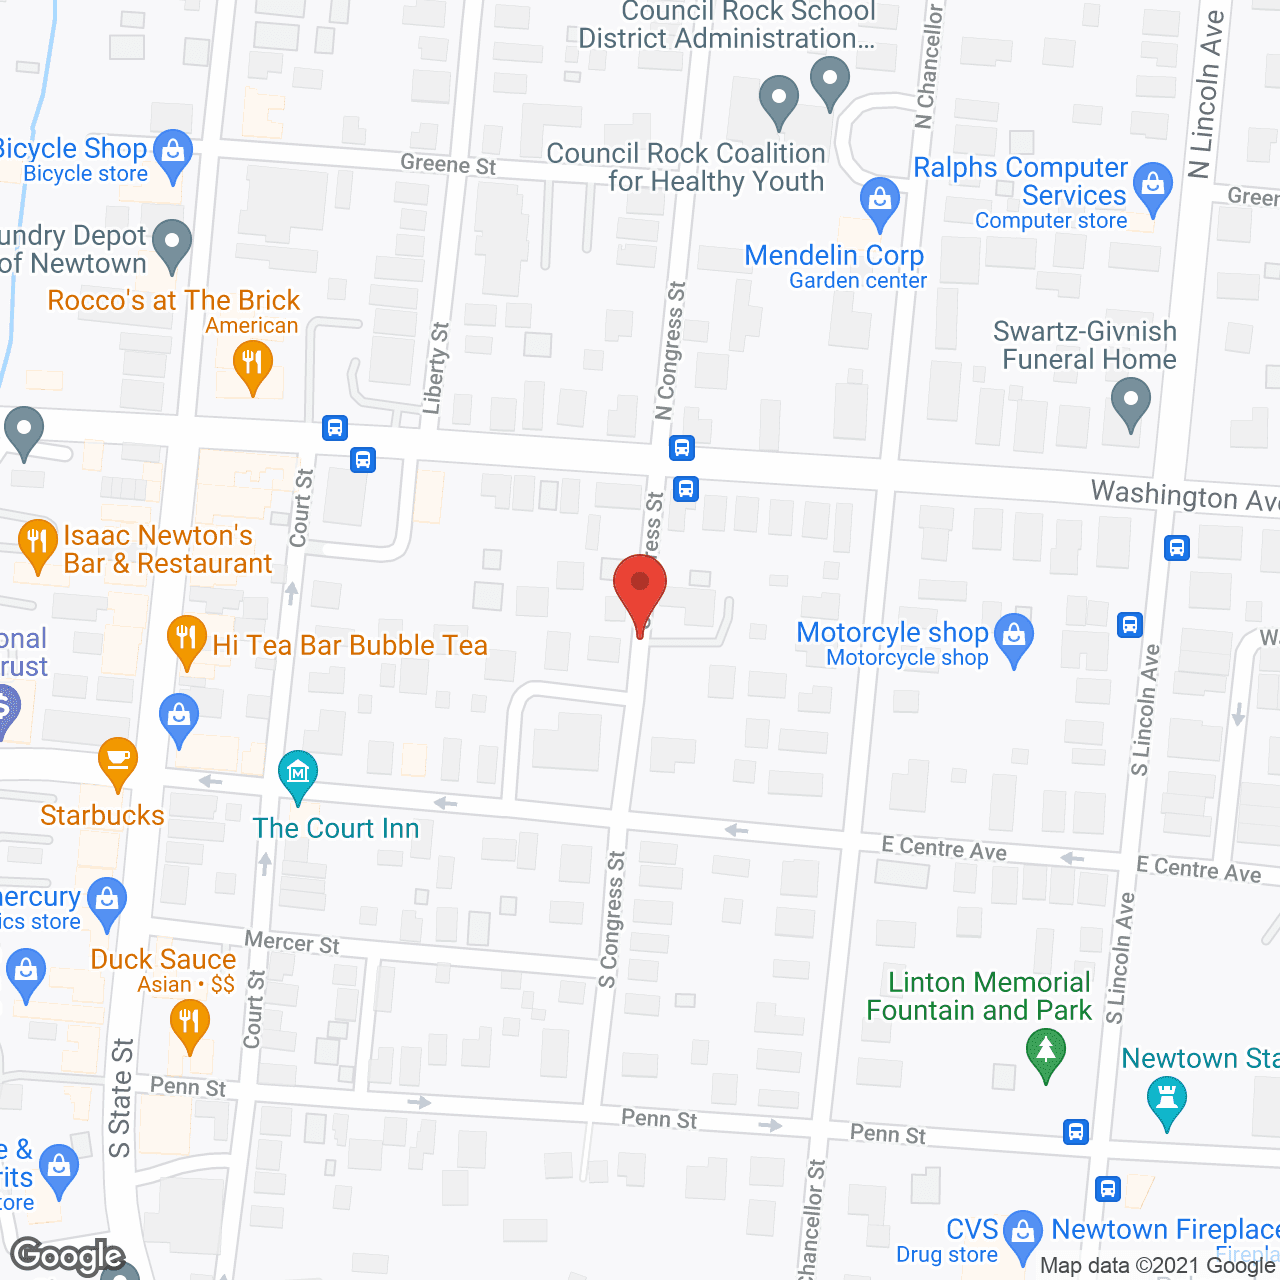 Friends Village, Paxson Campus in google map